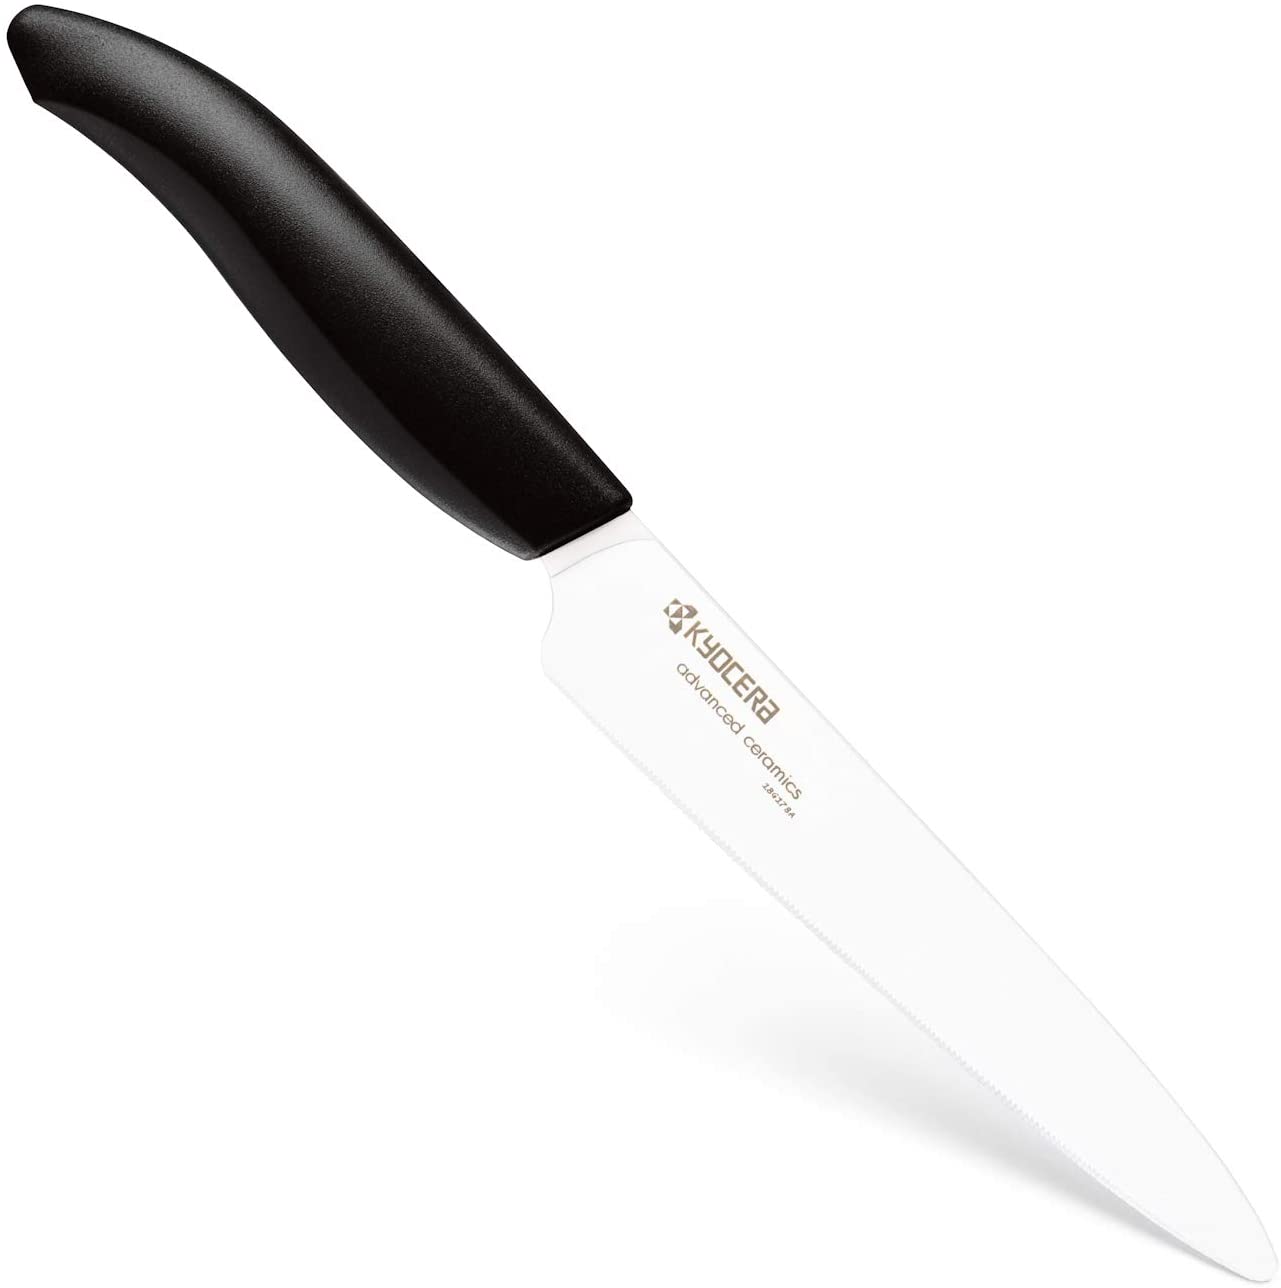 Kyocera Revolution Ceramic Utility Serrated Knife, 5 INCH, White